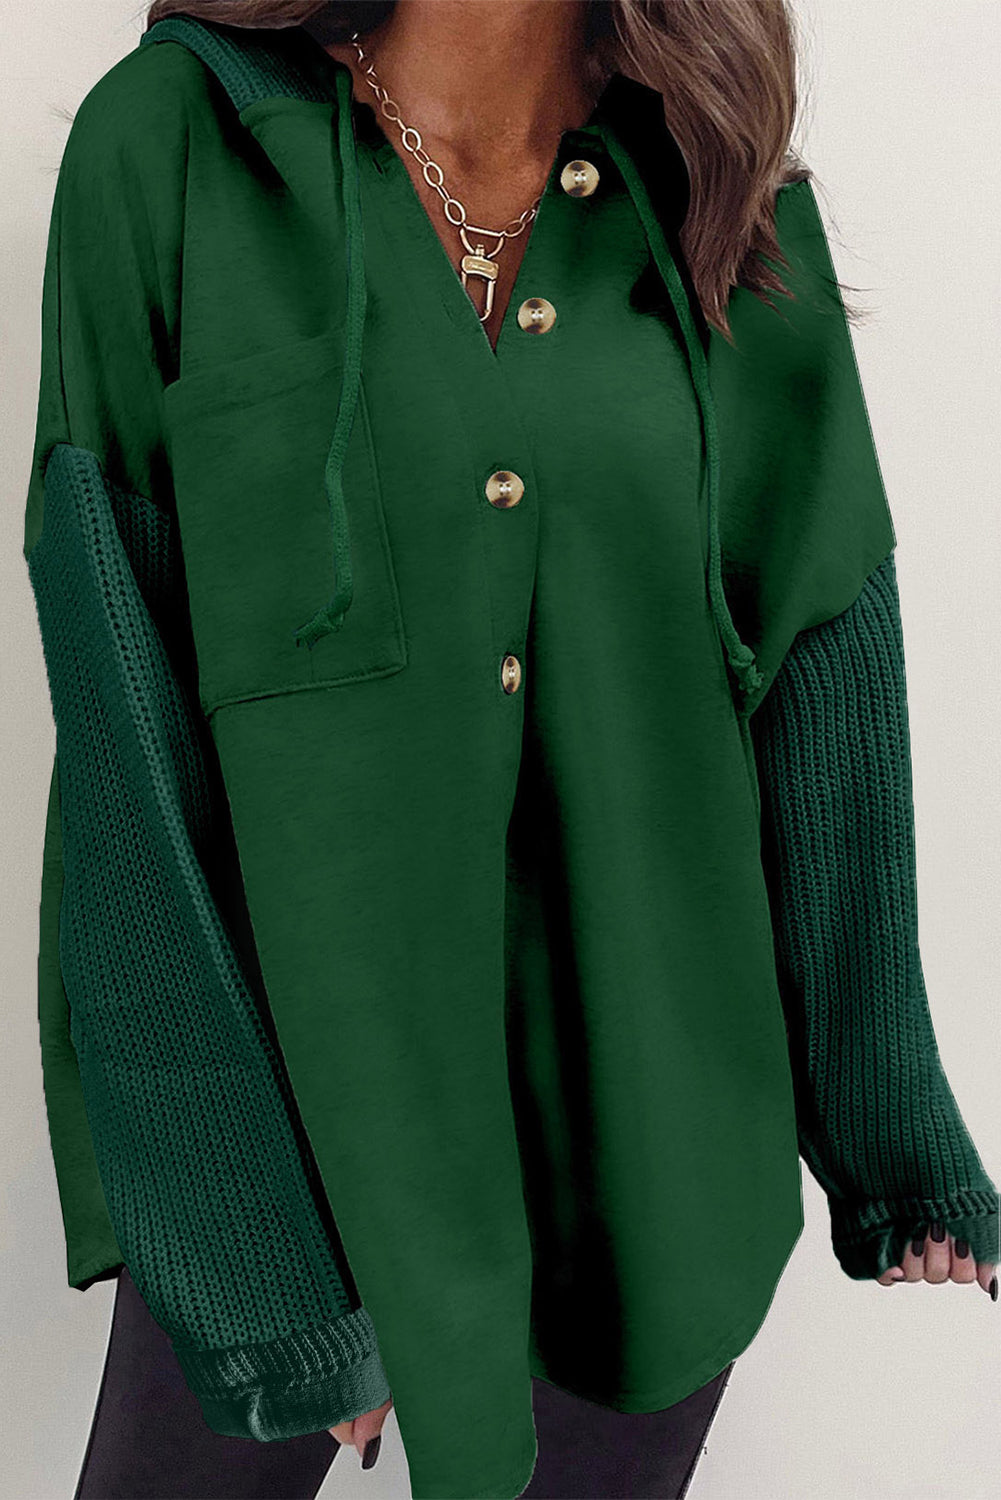 Veste à capuche boutonnée vert noirâtre à manches tricotées contrastées